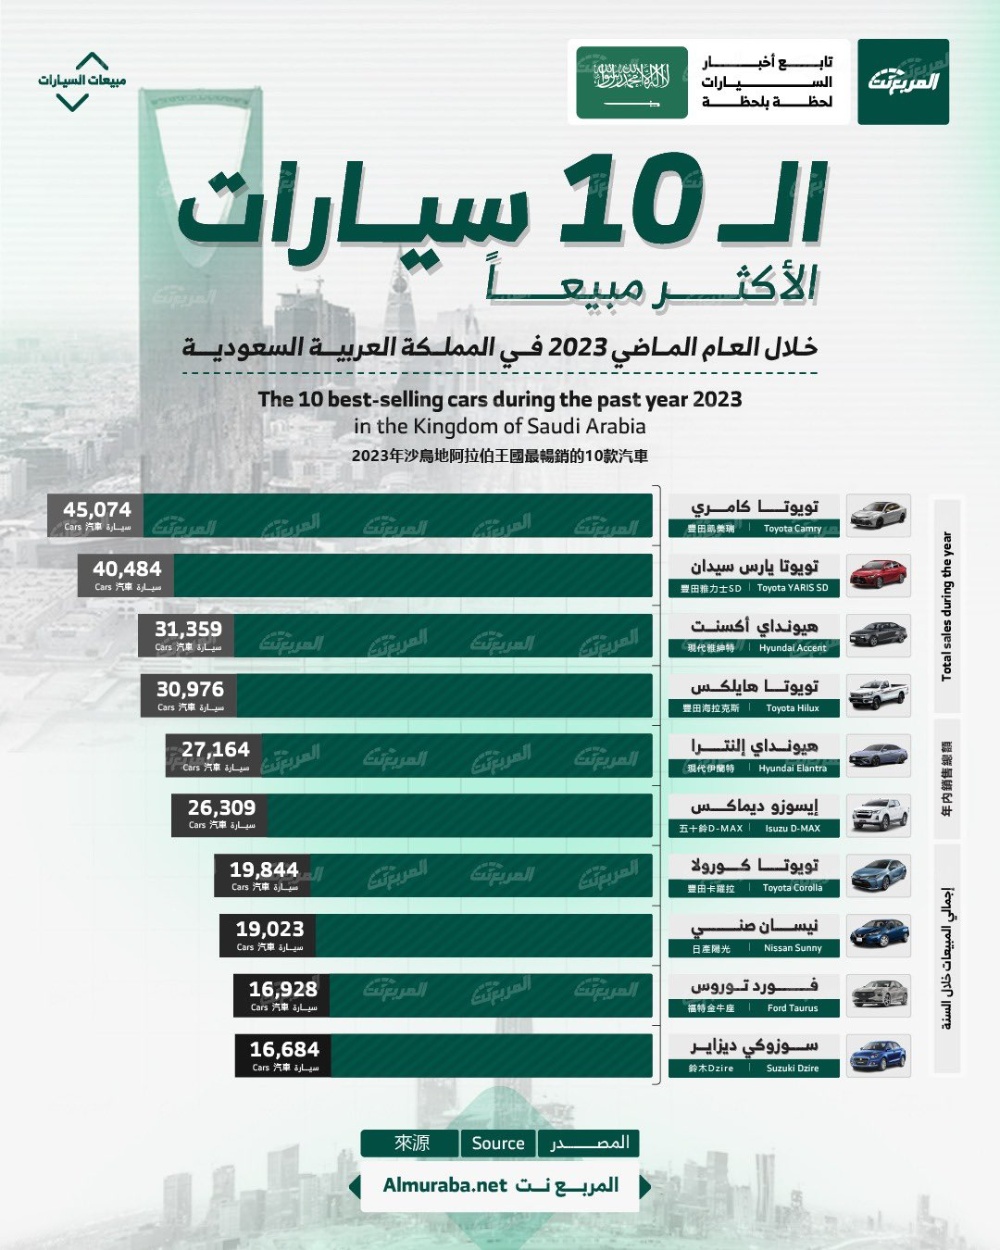 أكثر 10 سيارات مبيعًا في المملكة العربية السعودية خلال عام 2023.. بالأرقام